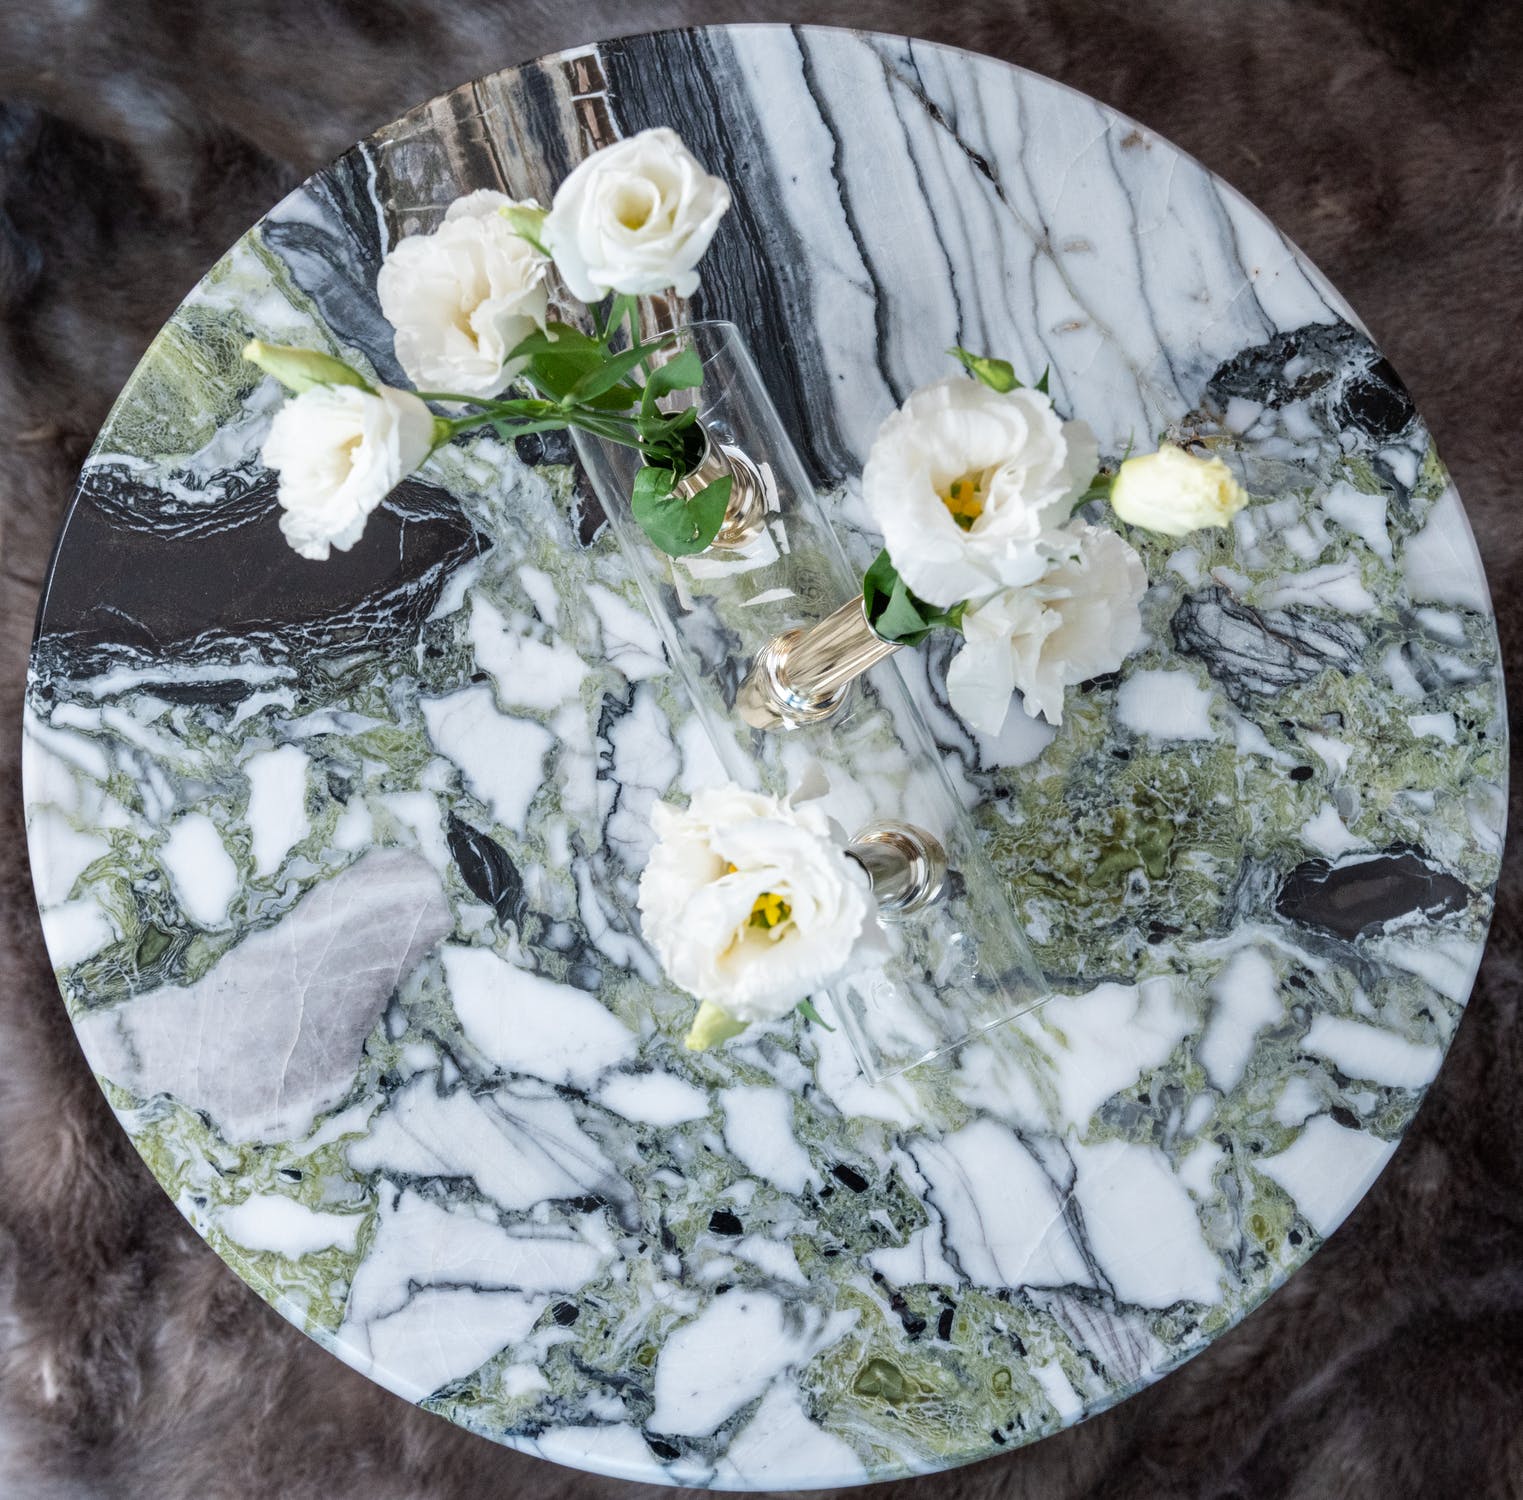 Contenedor de vidrio con rosas blancas sobre un plato de mármol. | Foto: Pexels